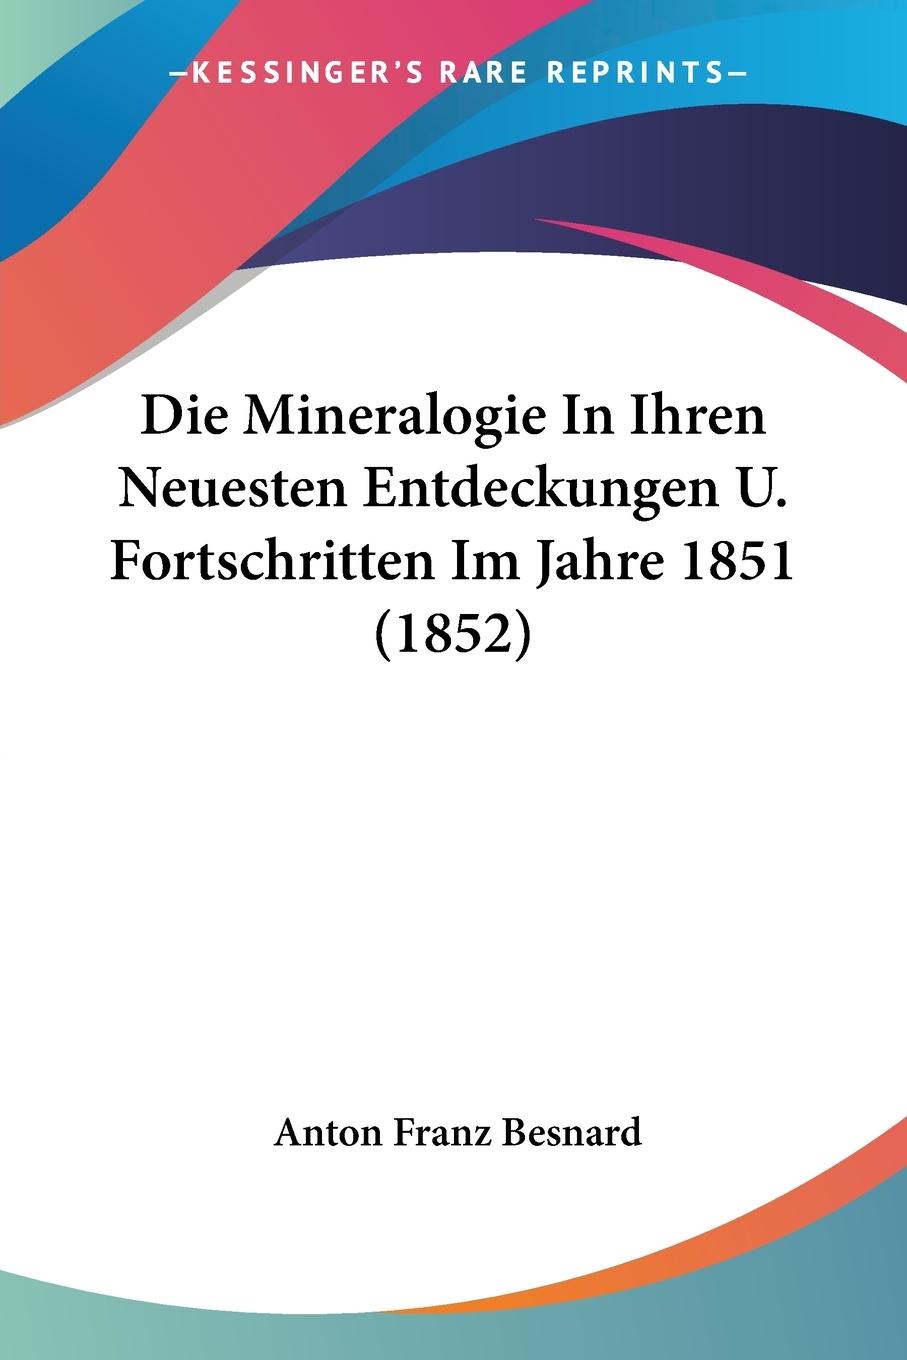 Die Mineralogie In Ihren Neuesten Entdeckungen U. Fortschritten Im Jahre 1851 (1852) - Besnard, Anton Franz